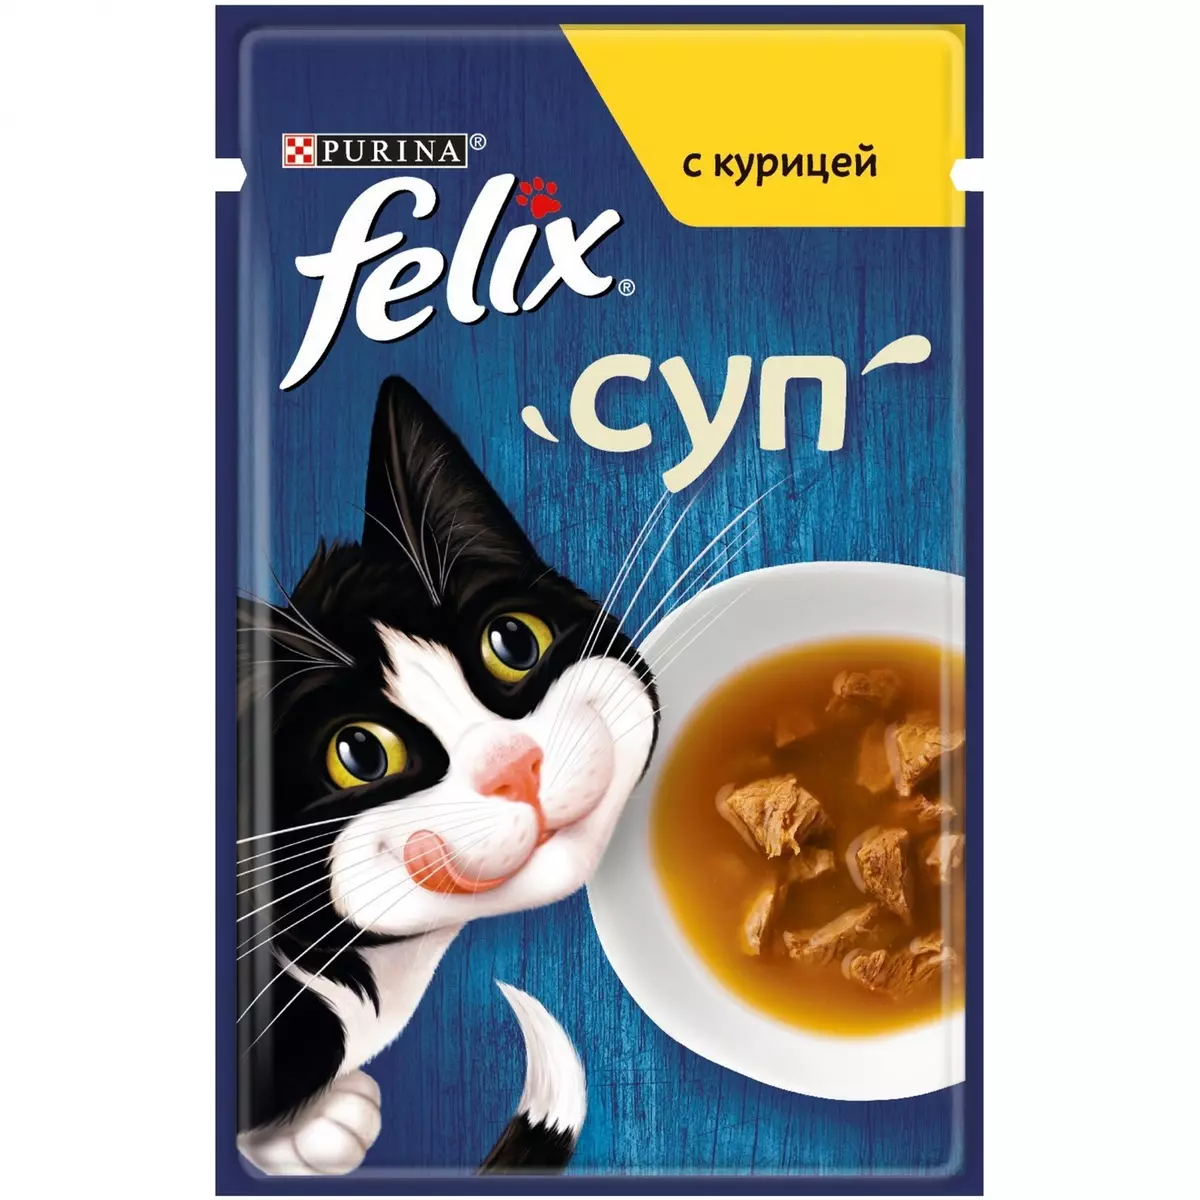 სველი საკვები Felix Cats: კომპოზიცია თხევადი კვების კატა, ზოგადი აღწერა და სხვადასხვა ასორტიმენტი. შეფასება 22138_17